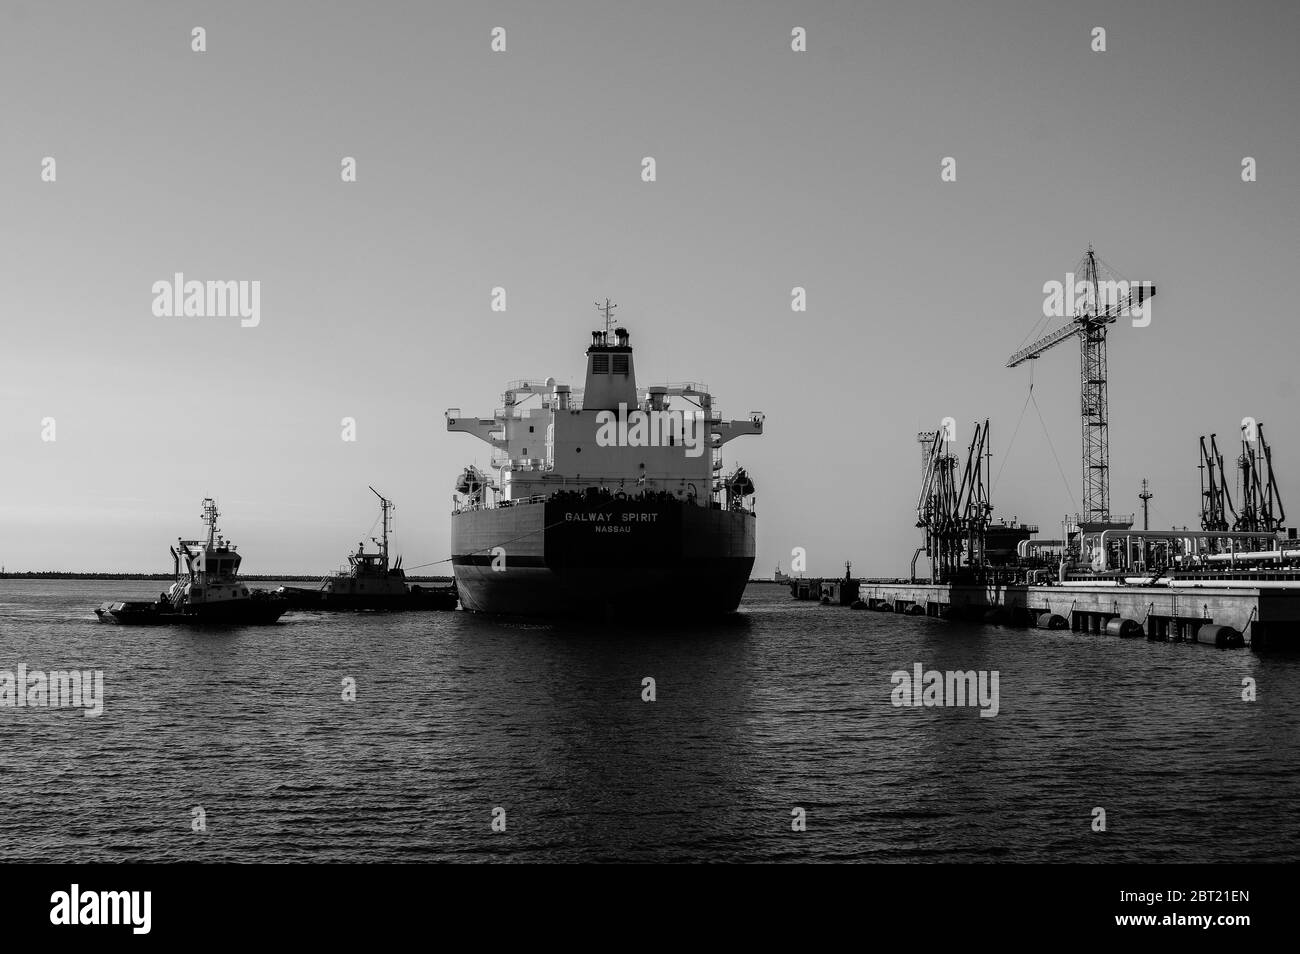 Oil Tanker in the harbor. Stock Photo